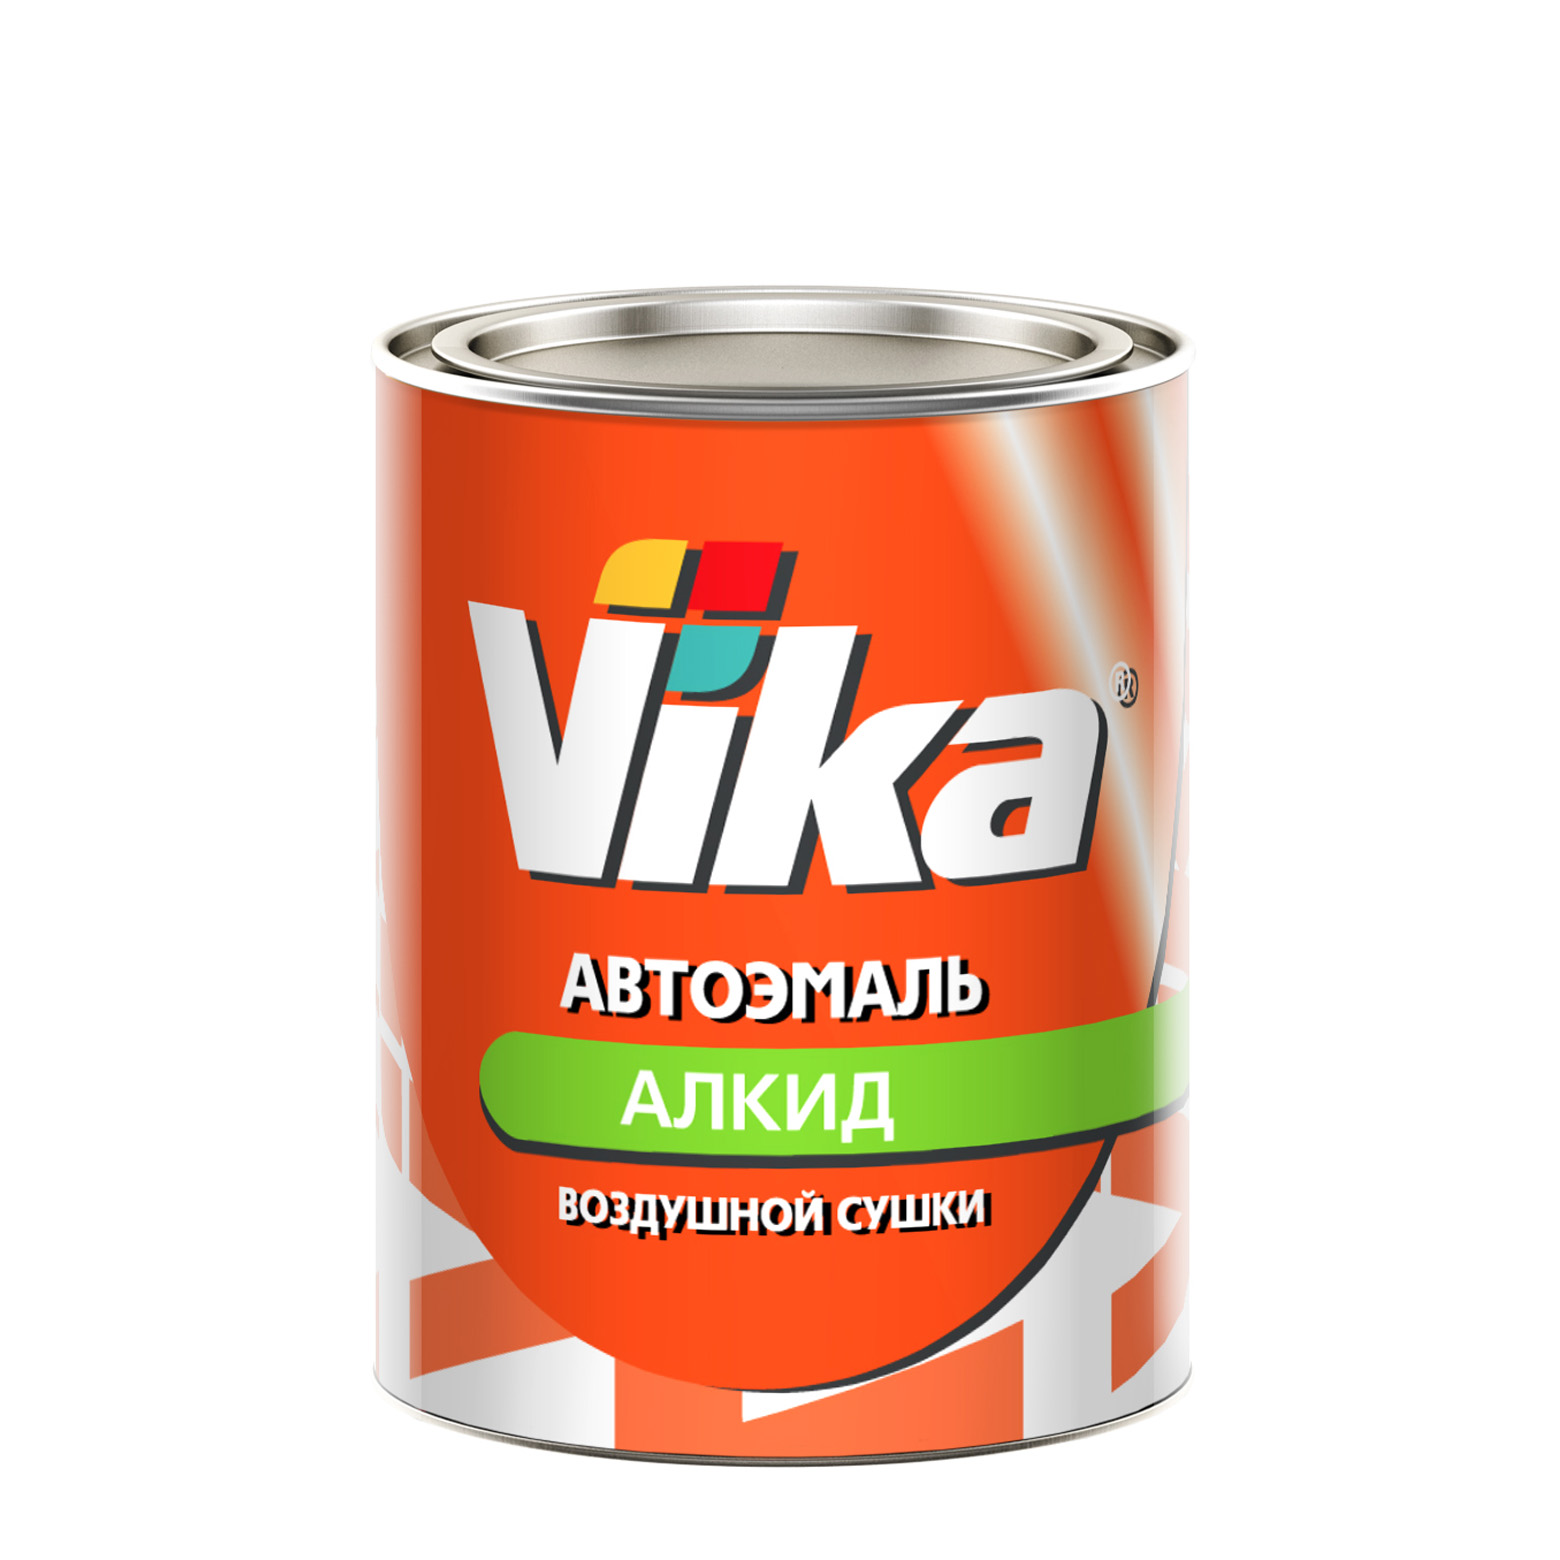 Фото 1 - Автоэмаль Vika-60, цвет Песочная алкидная глянцевая естественной сушки - 0,8 кг.